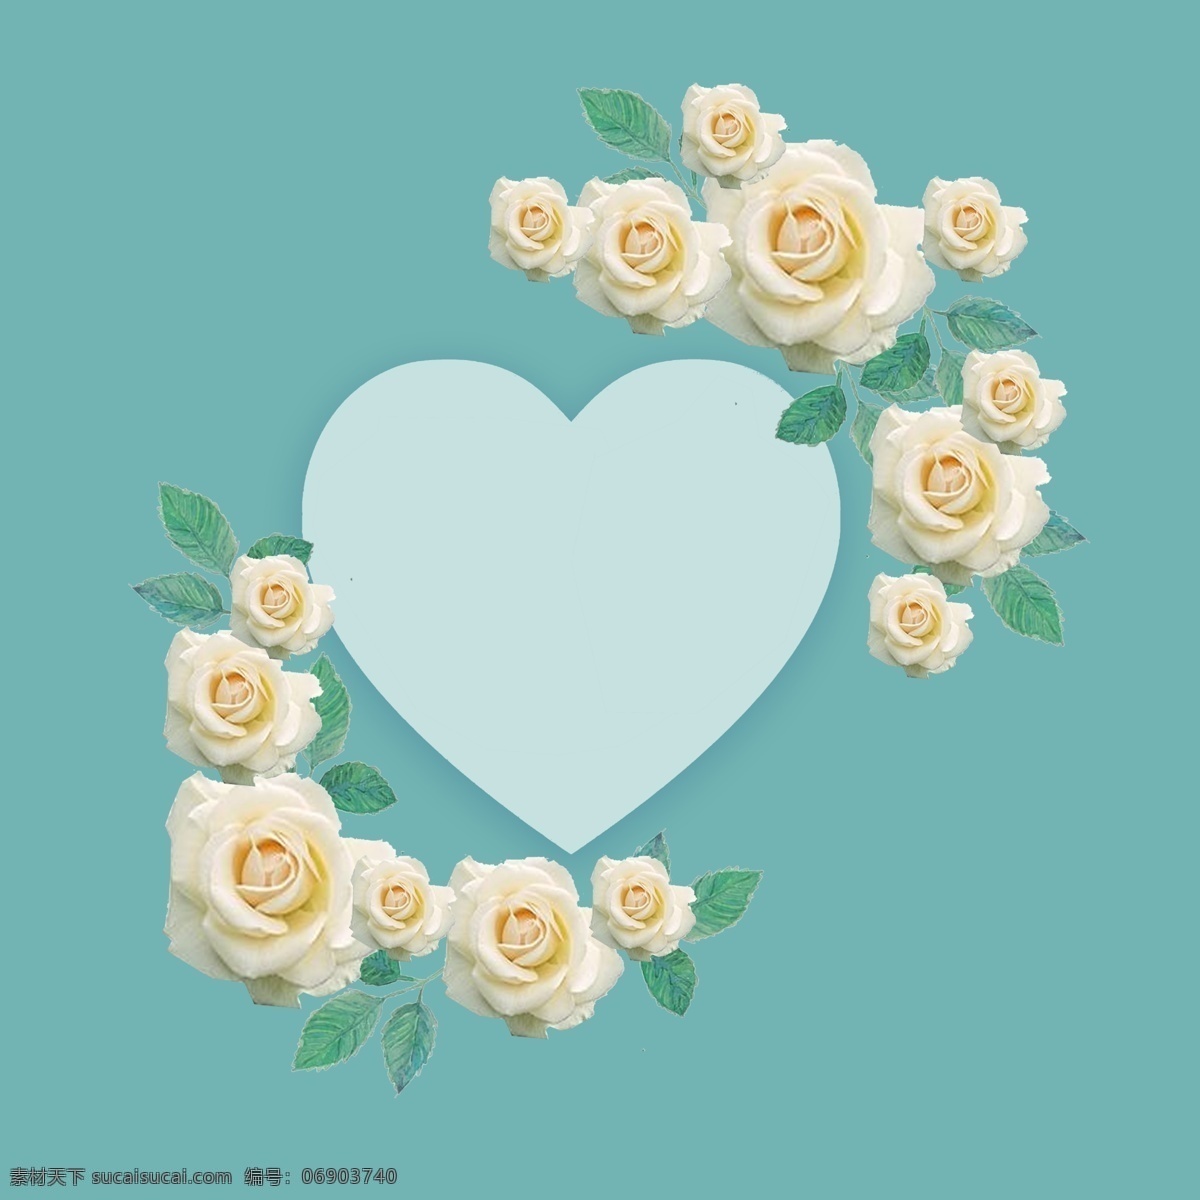 小清 新浪 漫 心形 边框 唯美 小清新 浪漫 白玫瑰